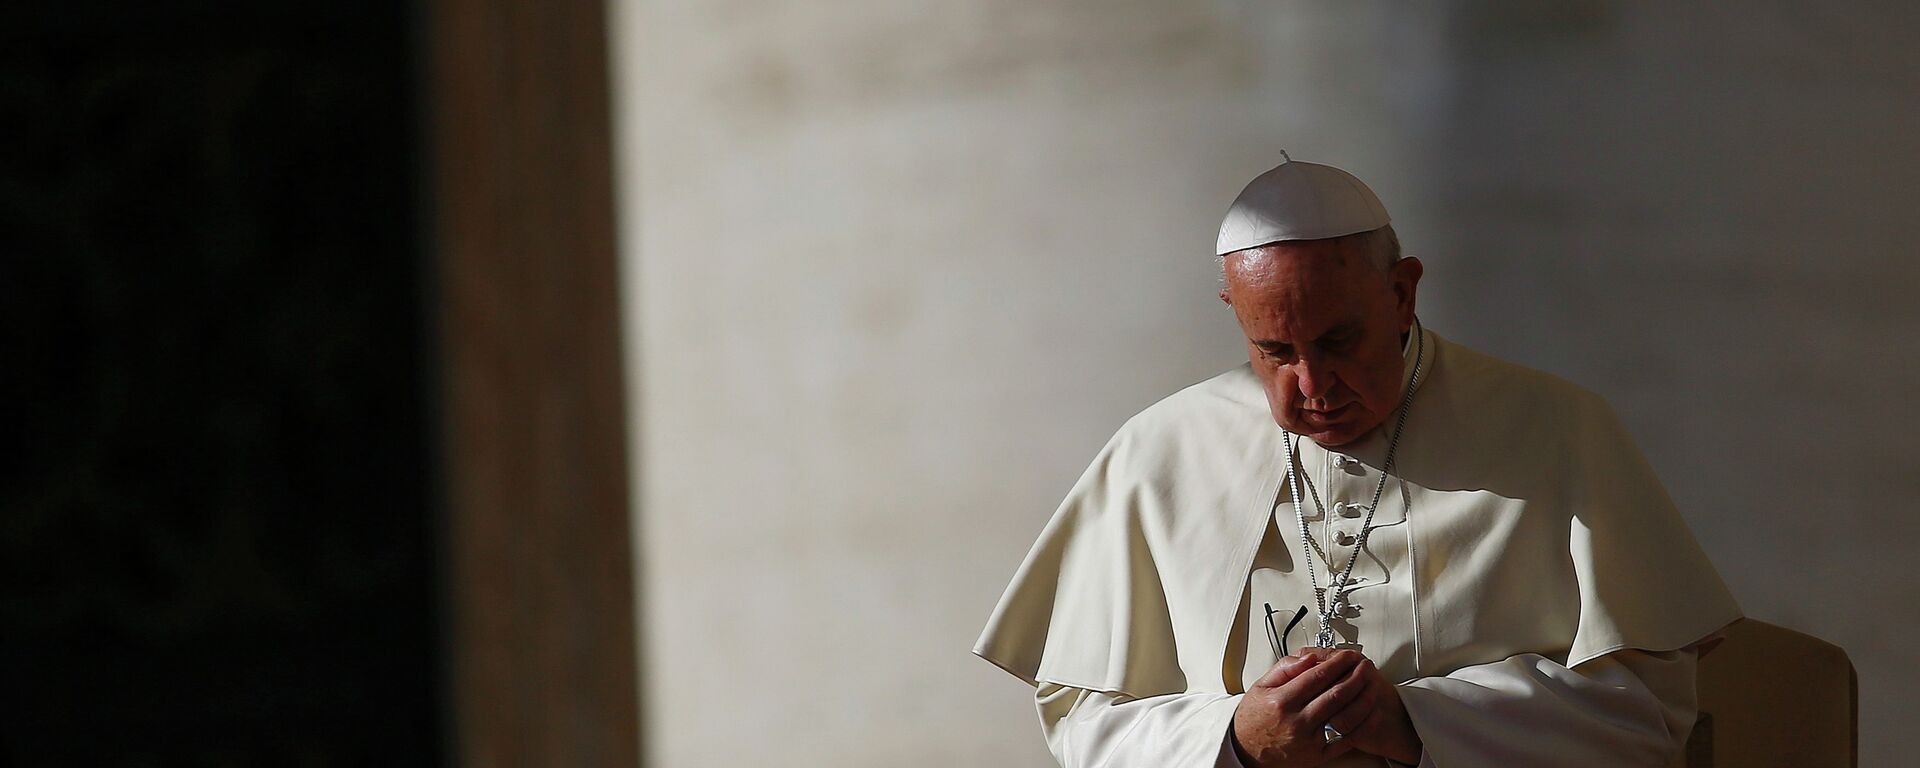 Papa Francisco llamó por teléfono a una víctima de abusos sexuales y le pidió disculpas - Sputnik Mundo, 1920, 24.11.2014